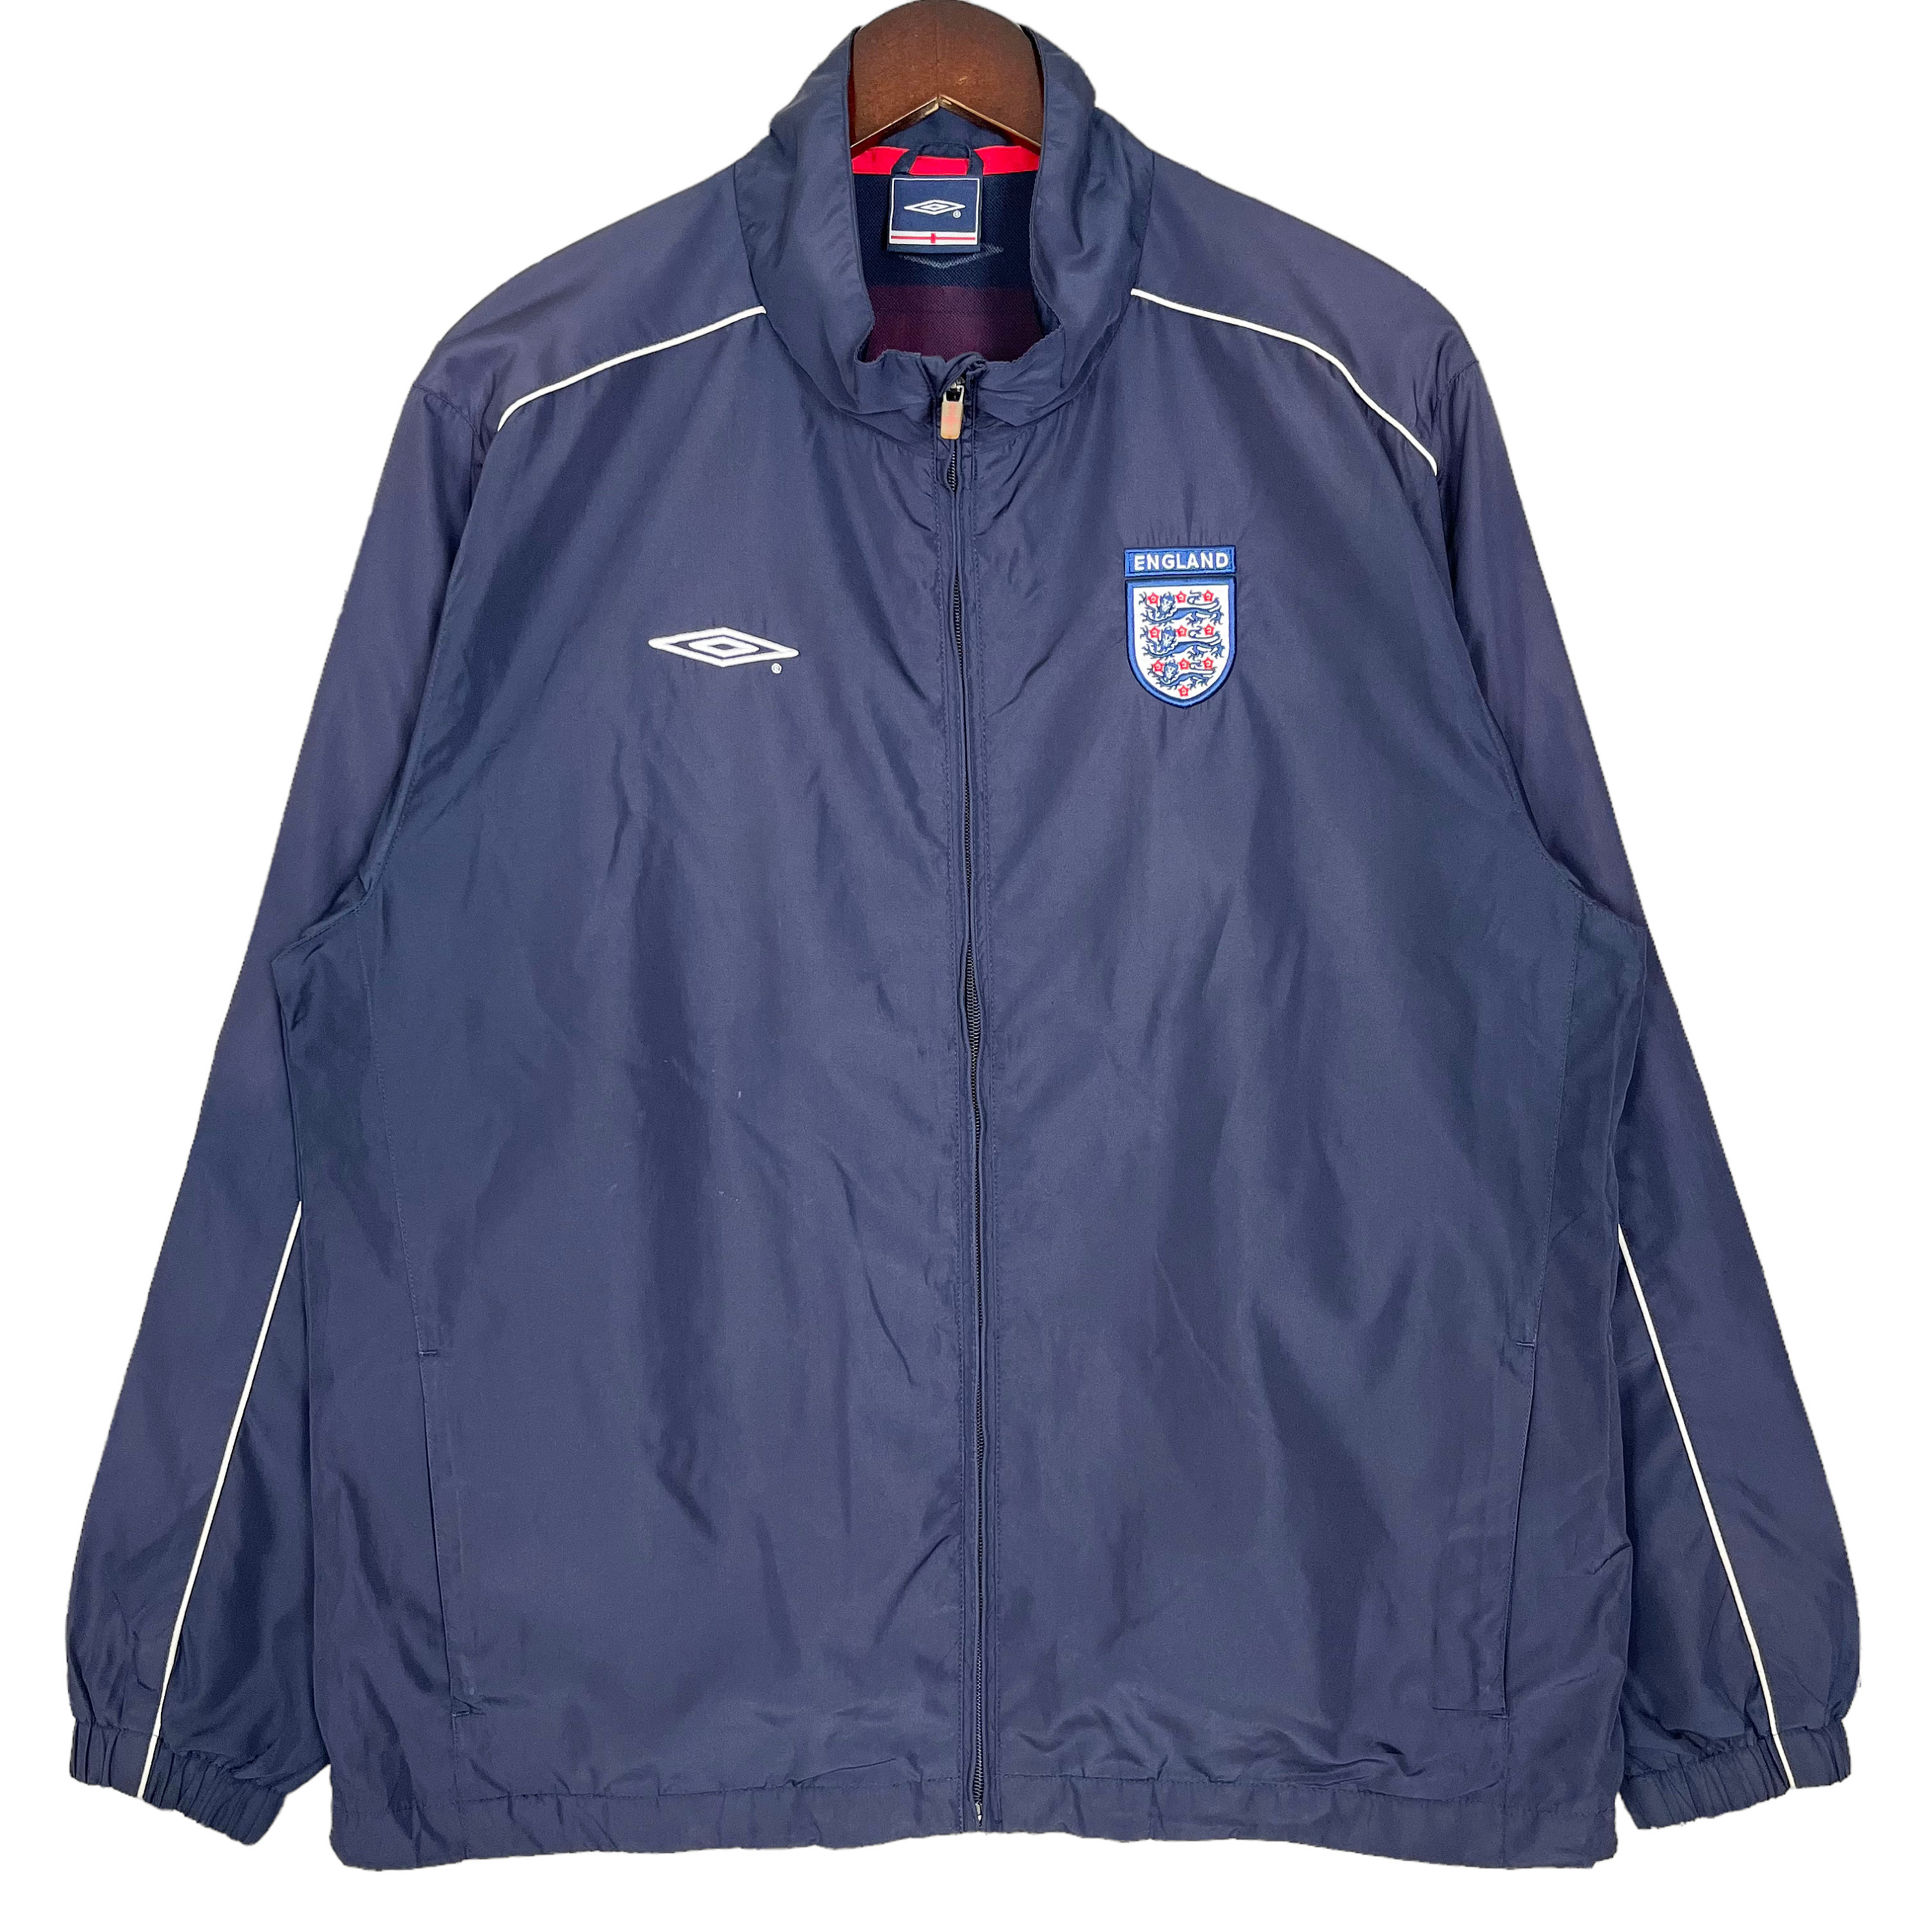 England Umbro Jacket - Etsy